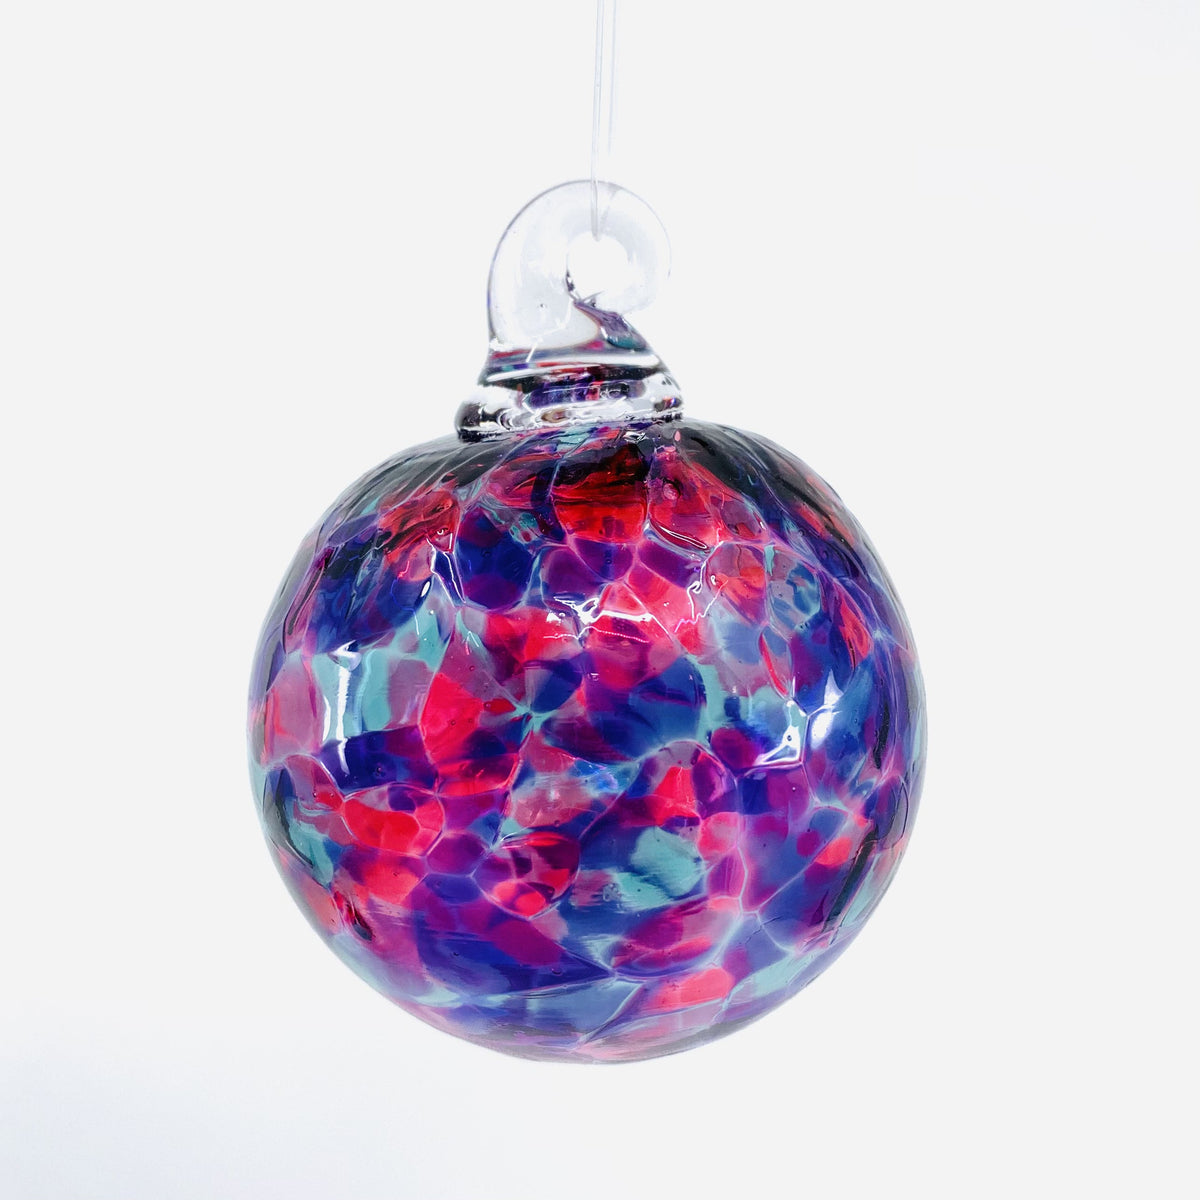 Mini Ornament, Mermaid Ornament Luke Adams Glass Blowing Studio 